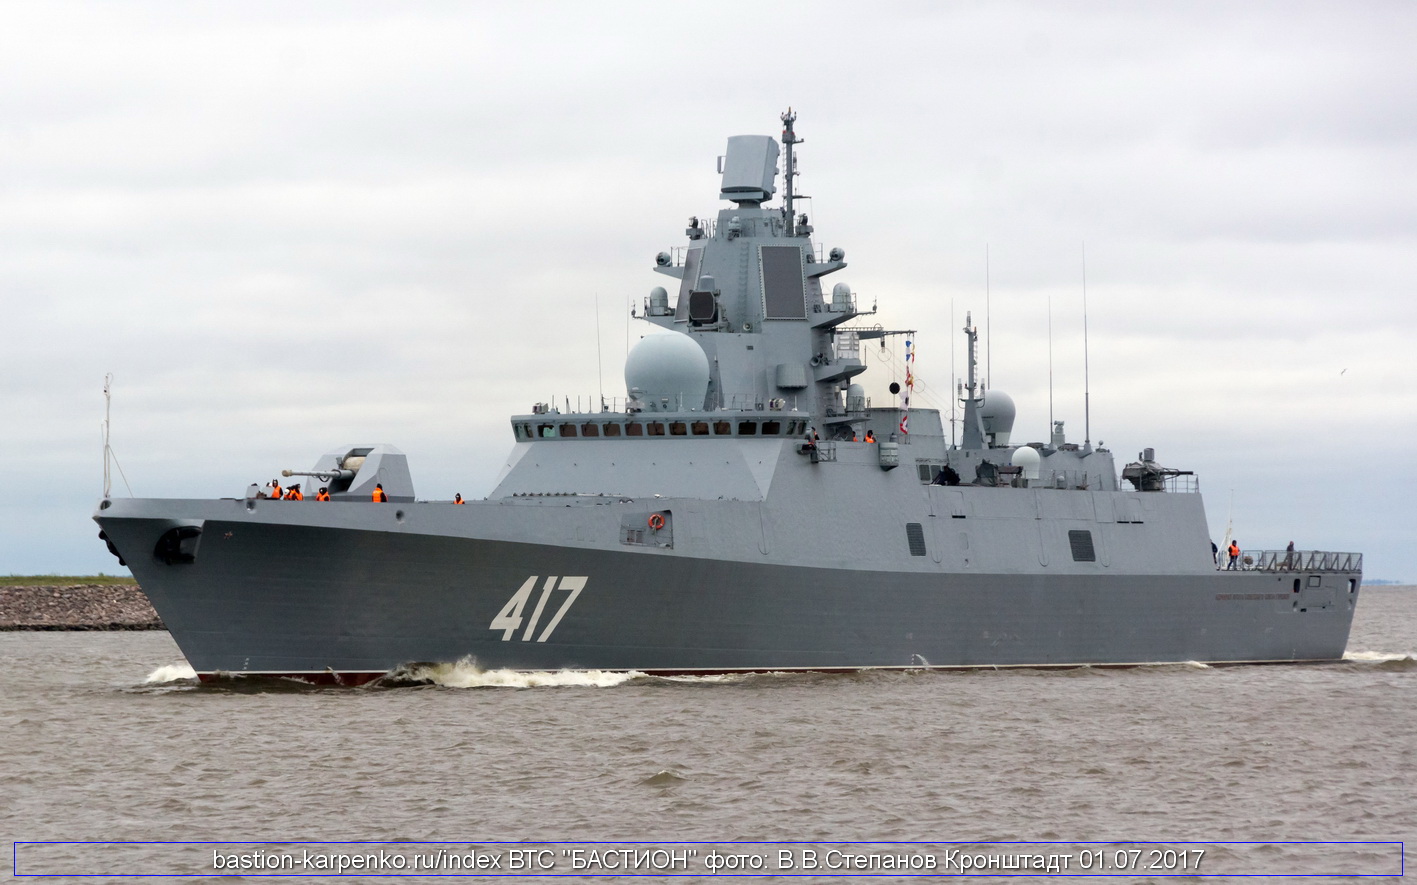 Ρωσικό Ναυτικό: Αποκάλυψε μυστικό project που τυφλώνει στο ένα μίλι αισθητήρες και πληρώματα εχθρικών πλοίων